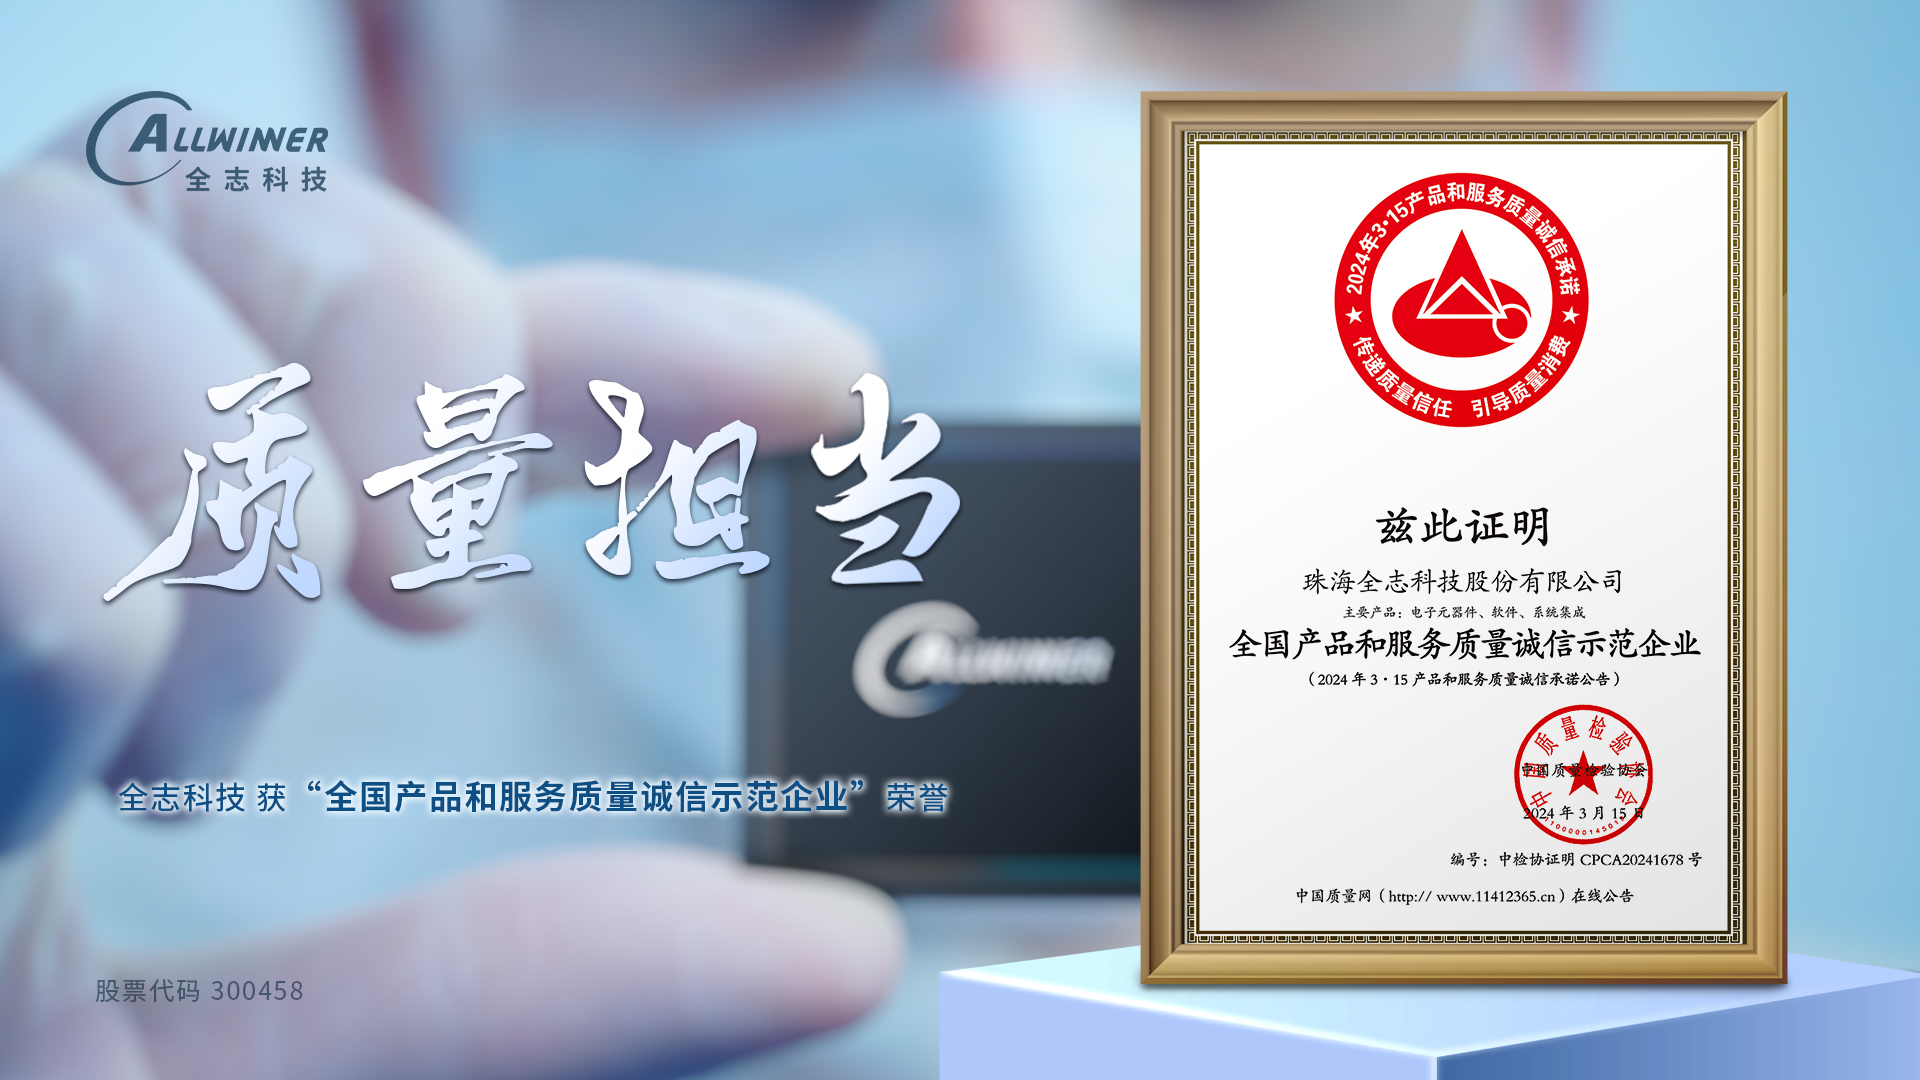 腾博汇游戏官方网站 获 全国产品和服务质量诚信示范企业 荣誉